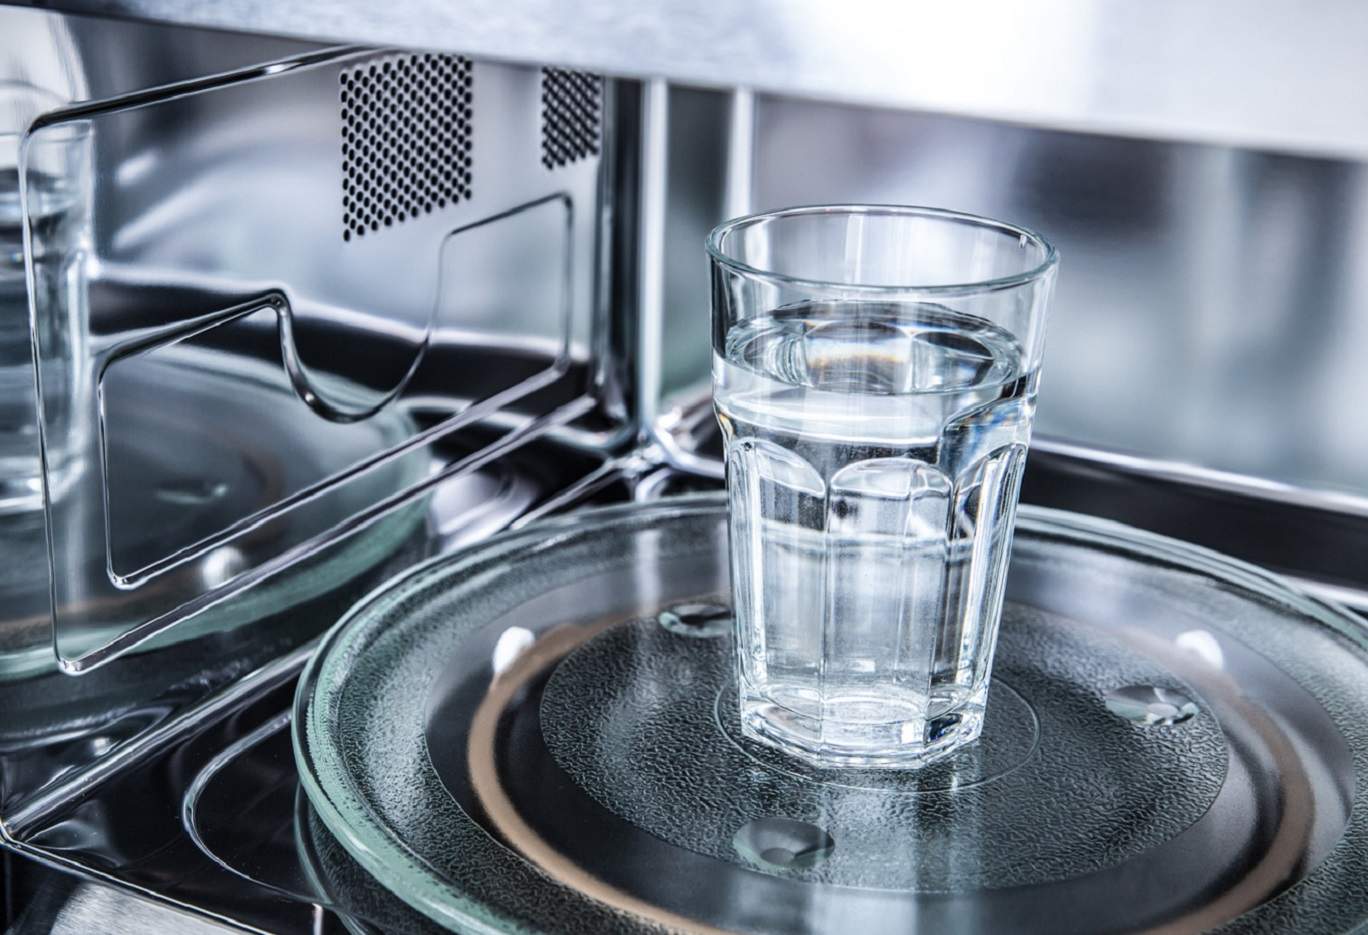 Pel teu bé, hauries de deixar d'escalfar l'aigua al microones: els experts t'expliquen per què